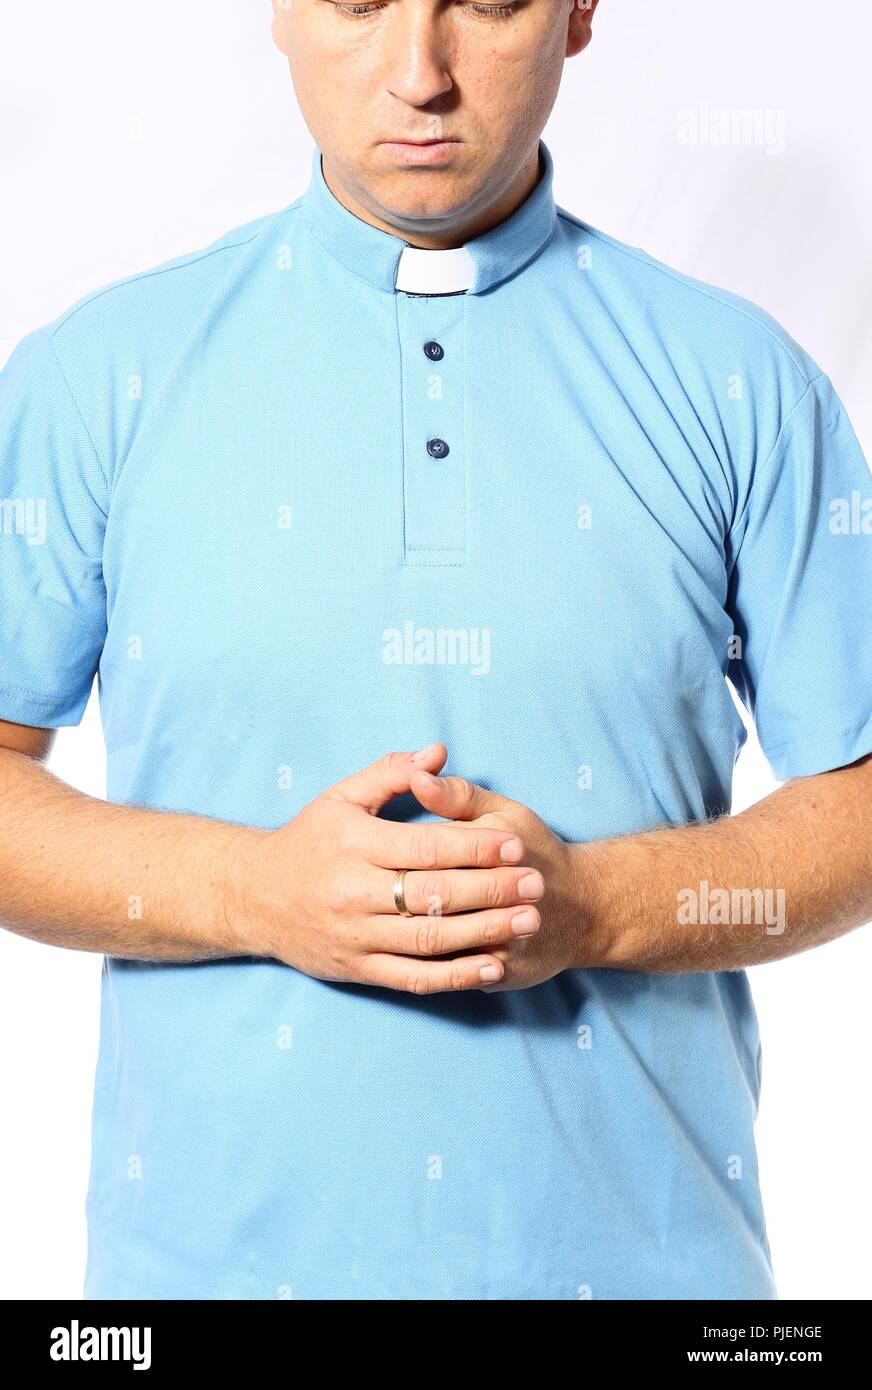 Jeune prêtre prie dans une chemise bleue Banque D'Images